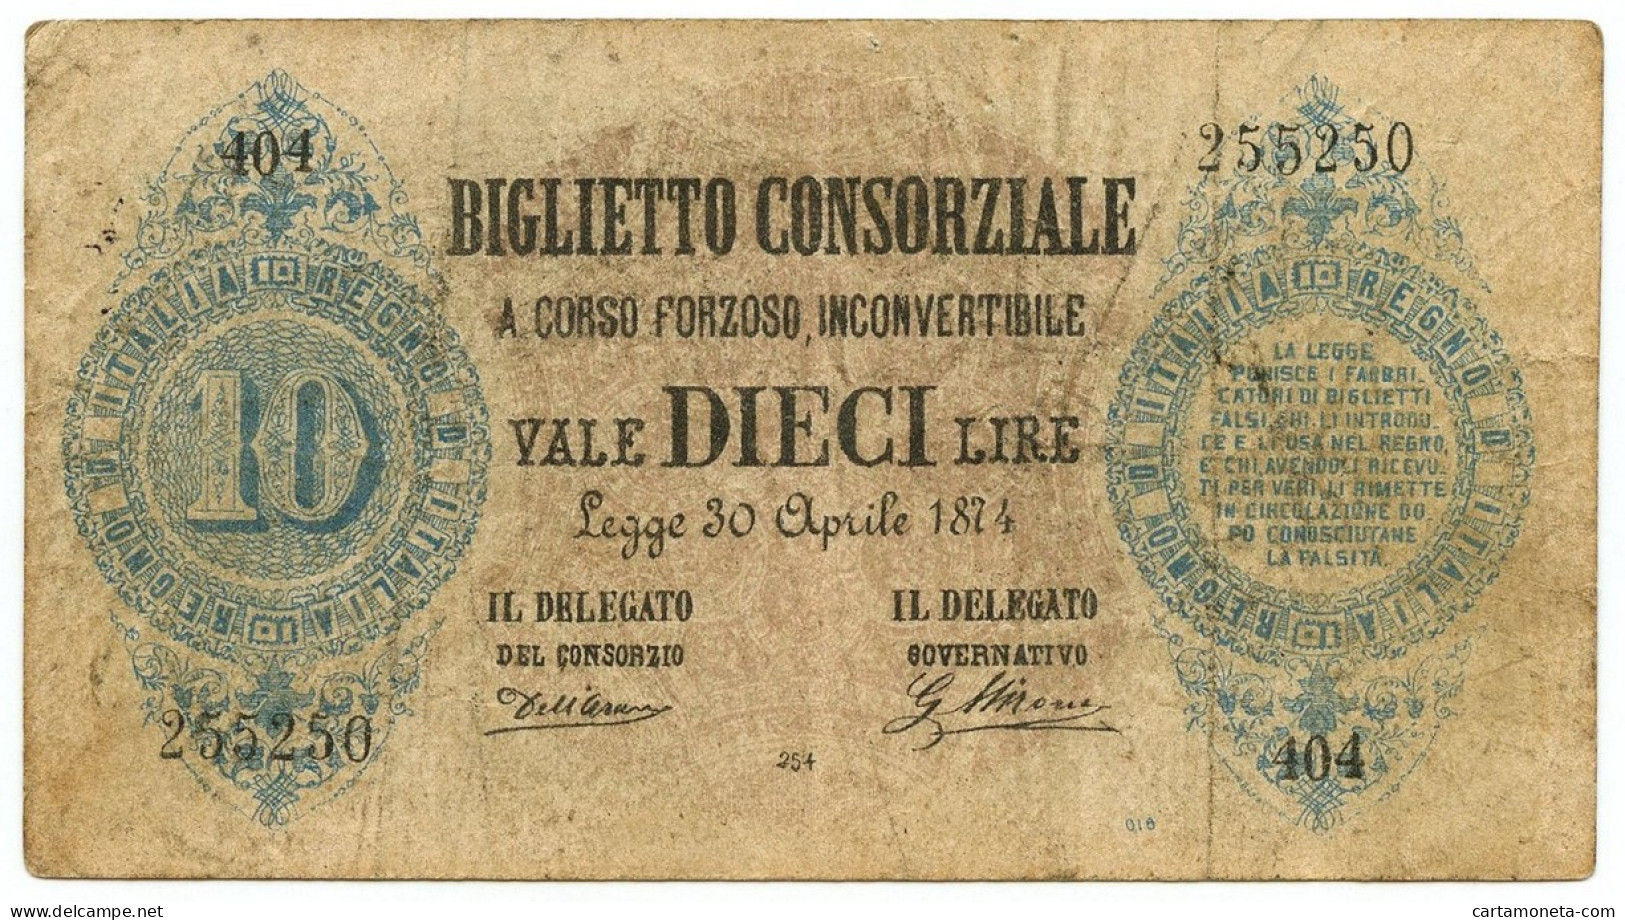 10 LIRE FALSO D'EPOCA BIGLIETTO CONSORZIALE REGNO D'ITALIA 30/04/1874 BB - [ 8] Fakes & Specimens